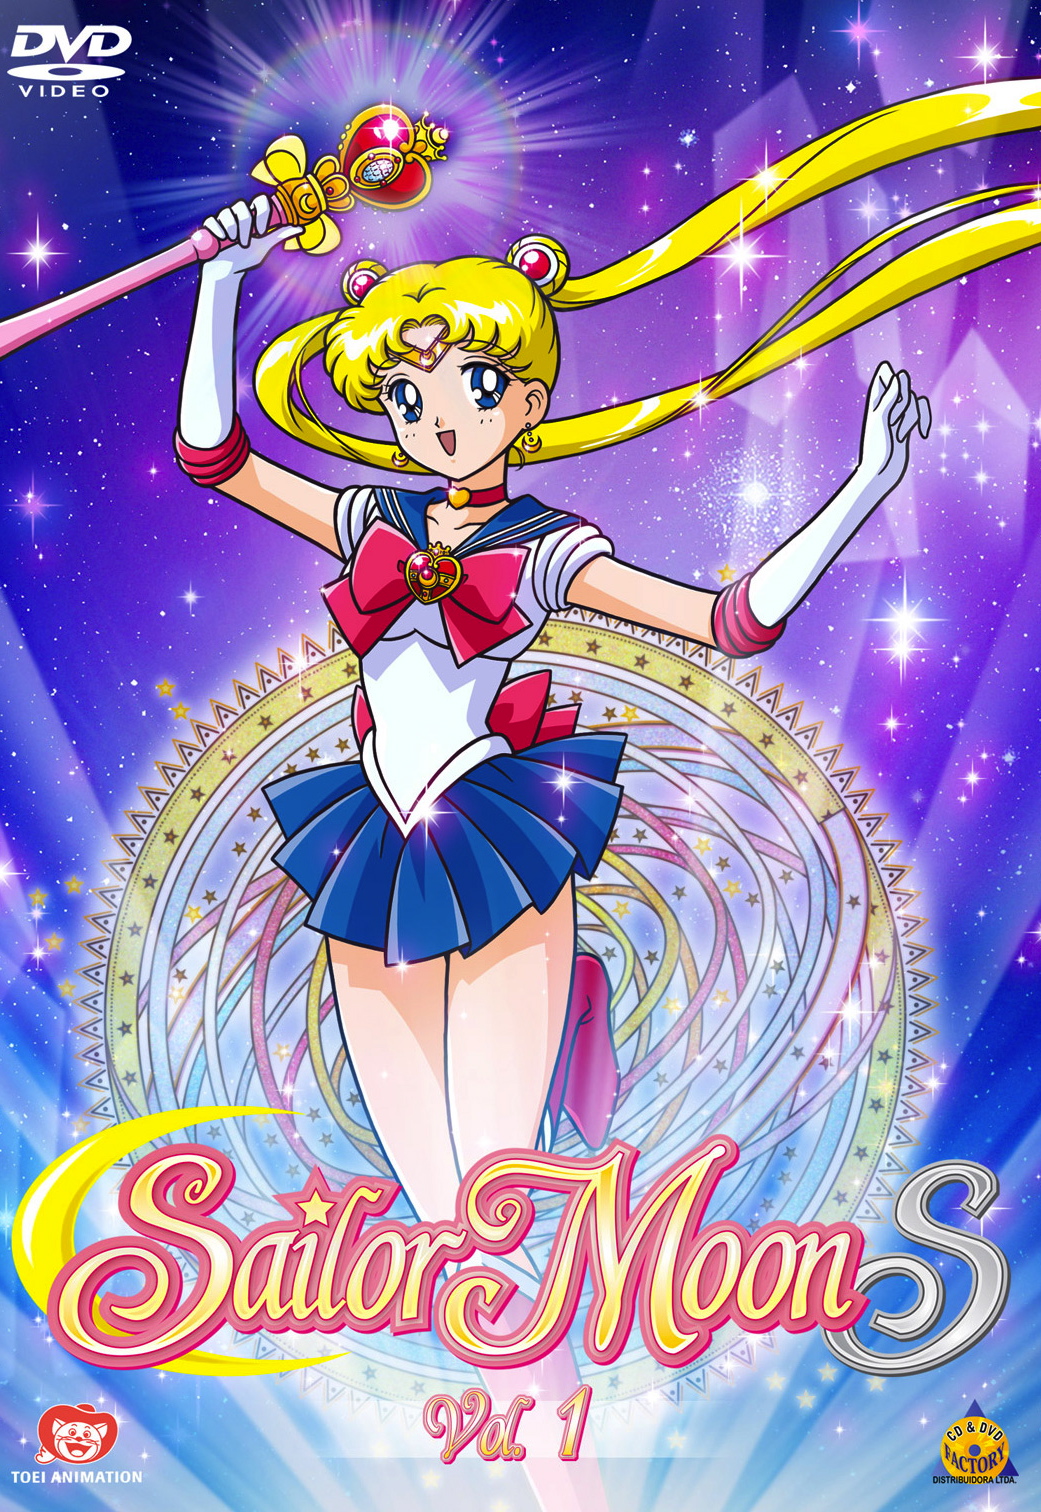 Sailor Moon S Volume 1 (Brazilian DVD) Sailor Moon Wiki Fandom